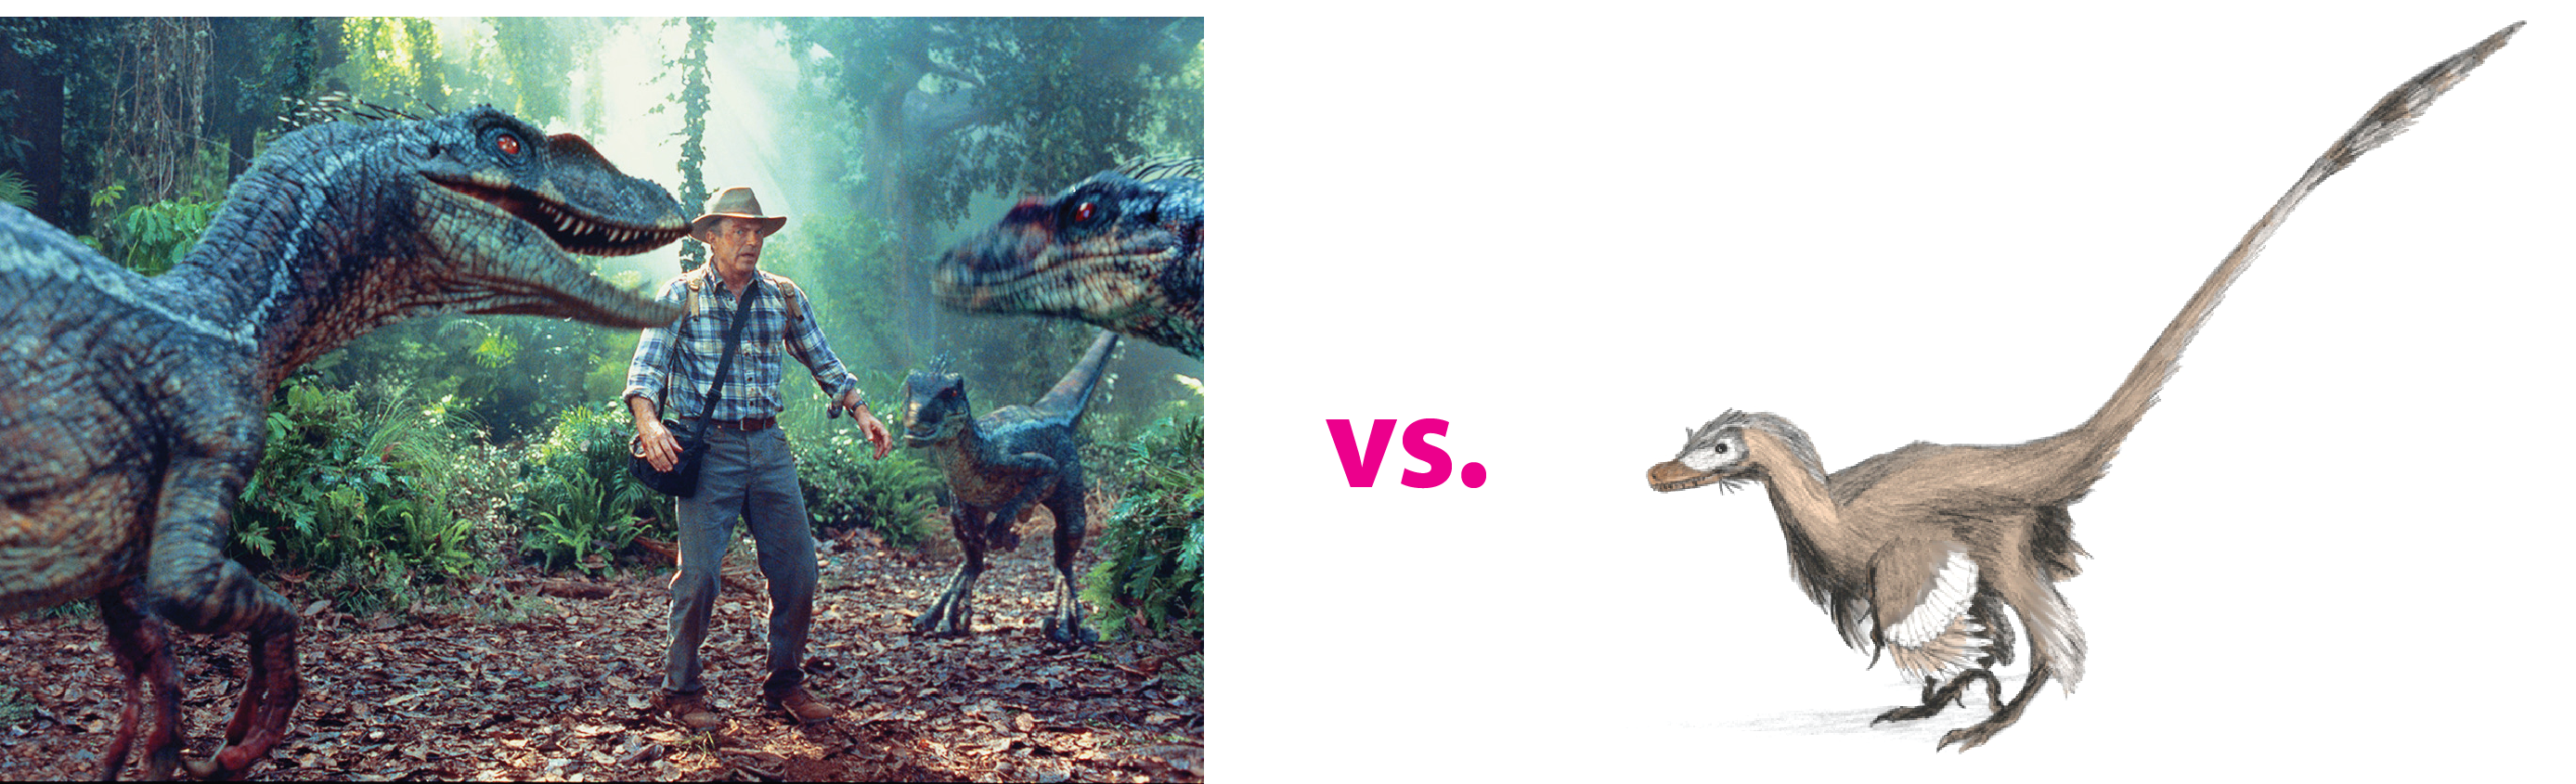 Velociraptor - Film und echt